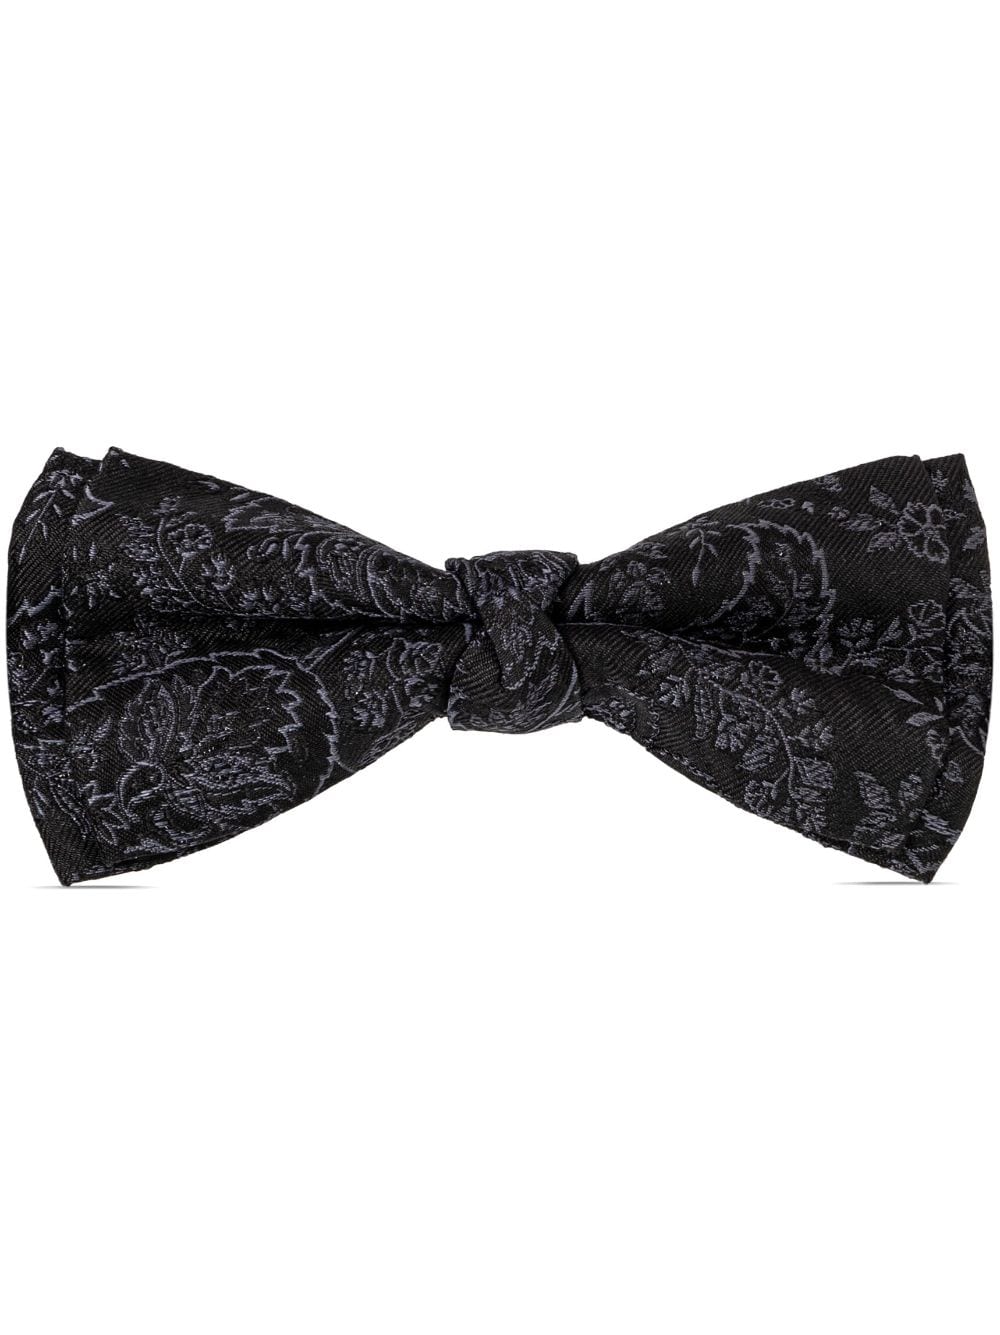 ETRO floral-jacquard twill bow tie - Black von ETRO